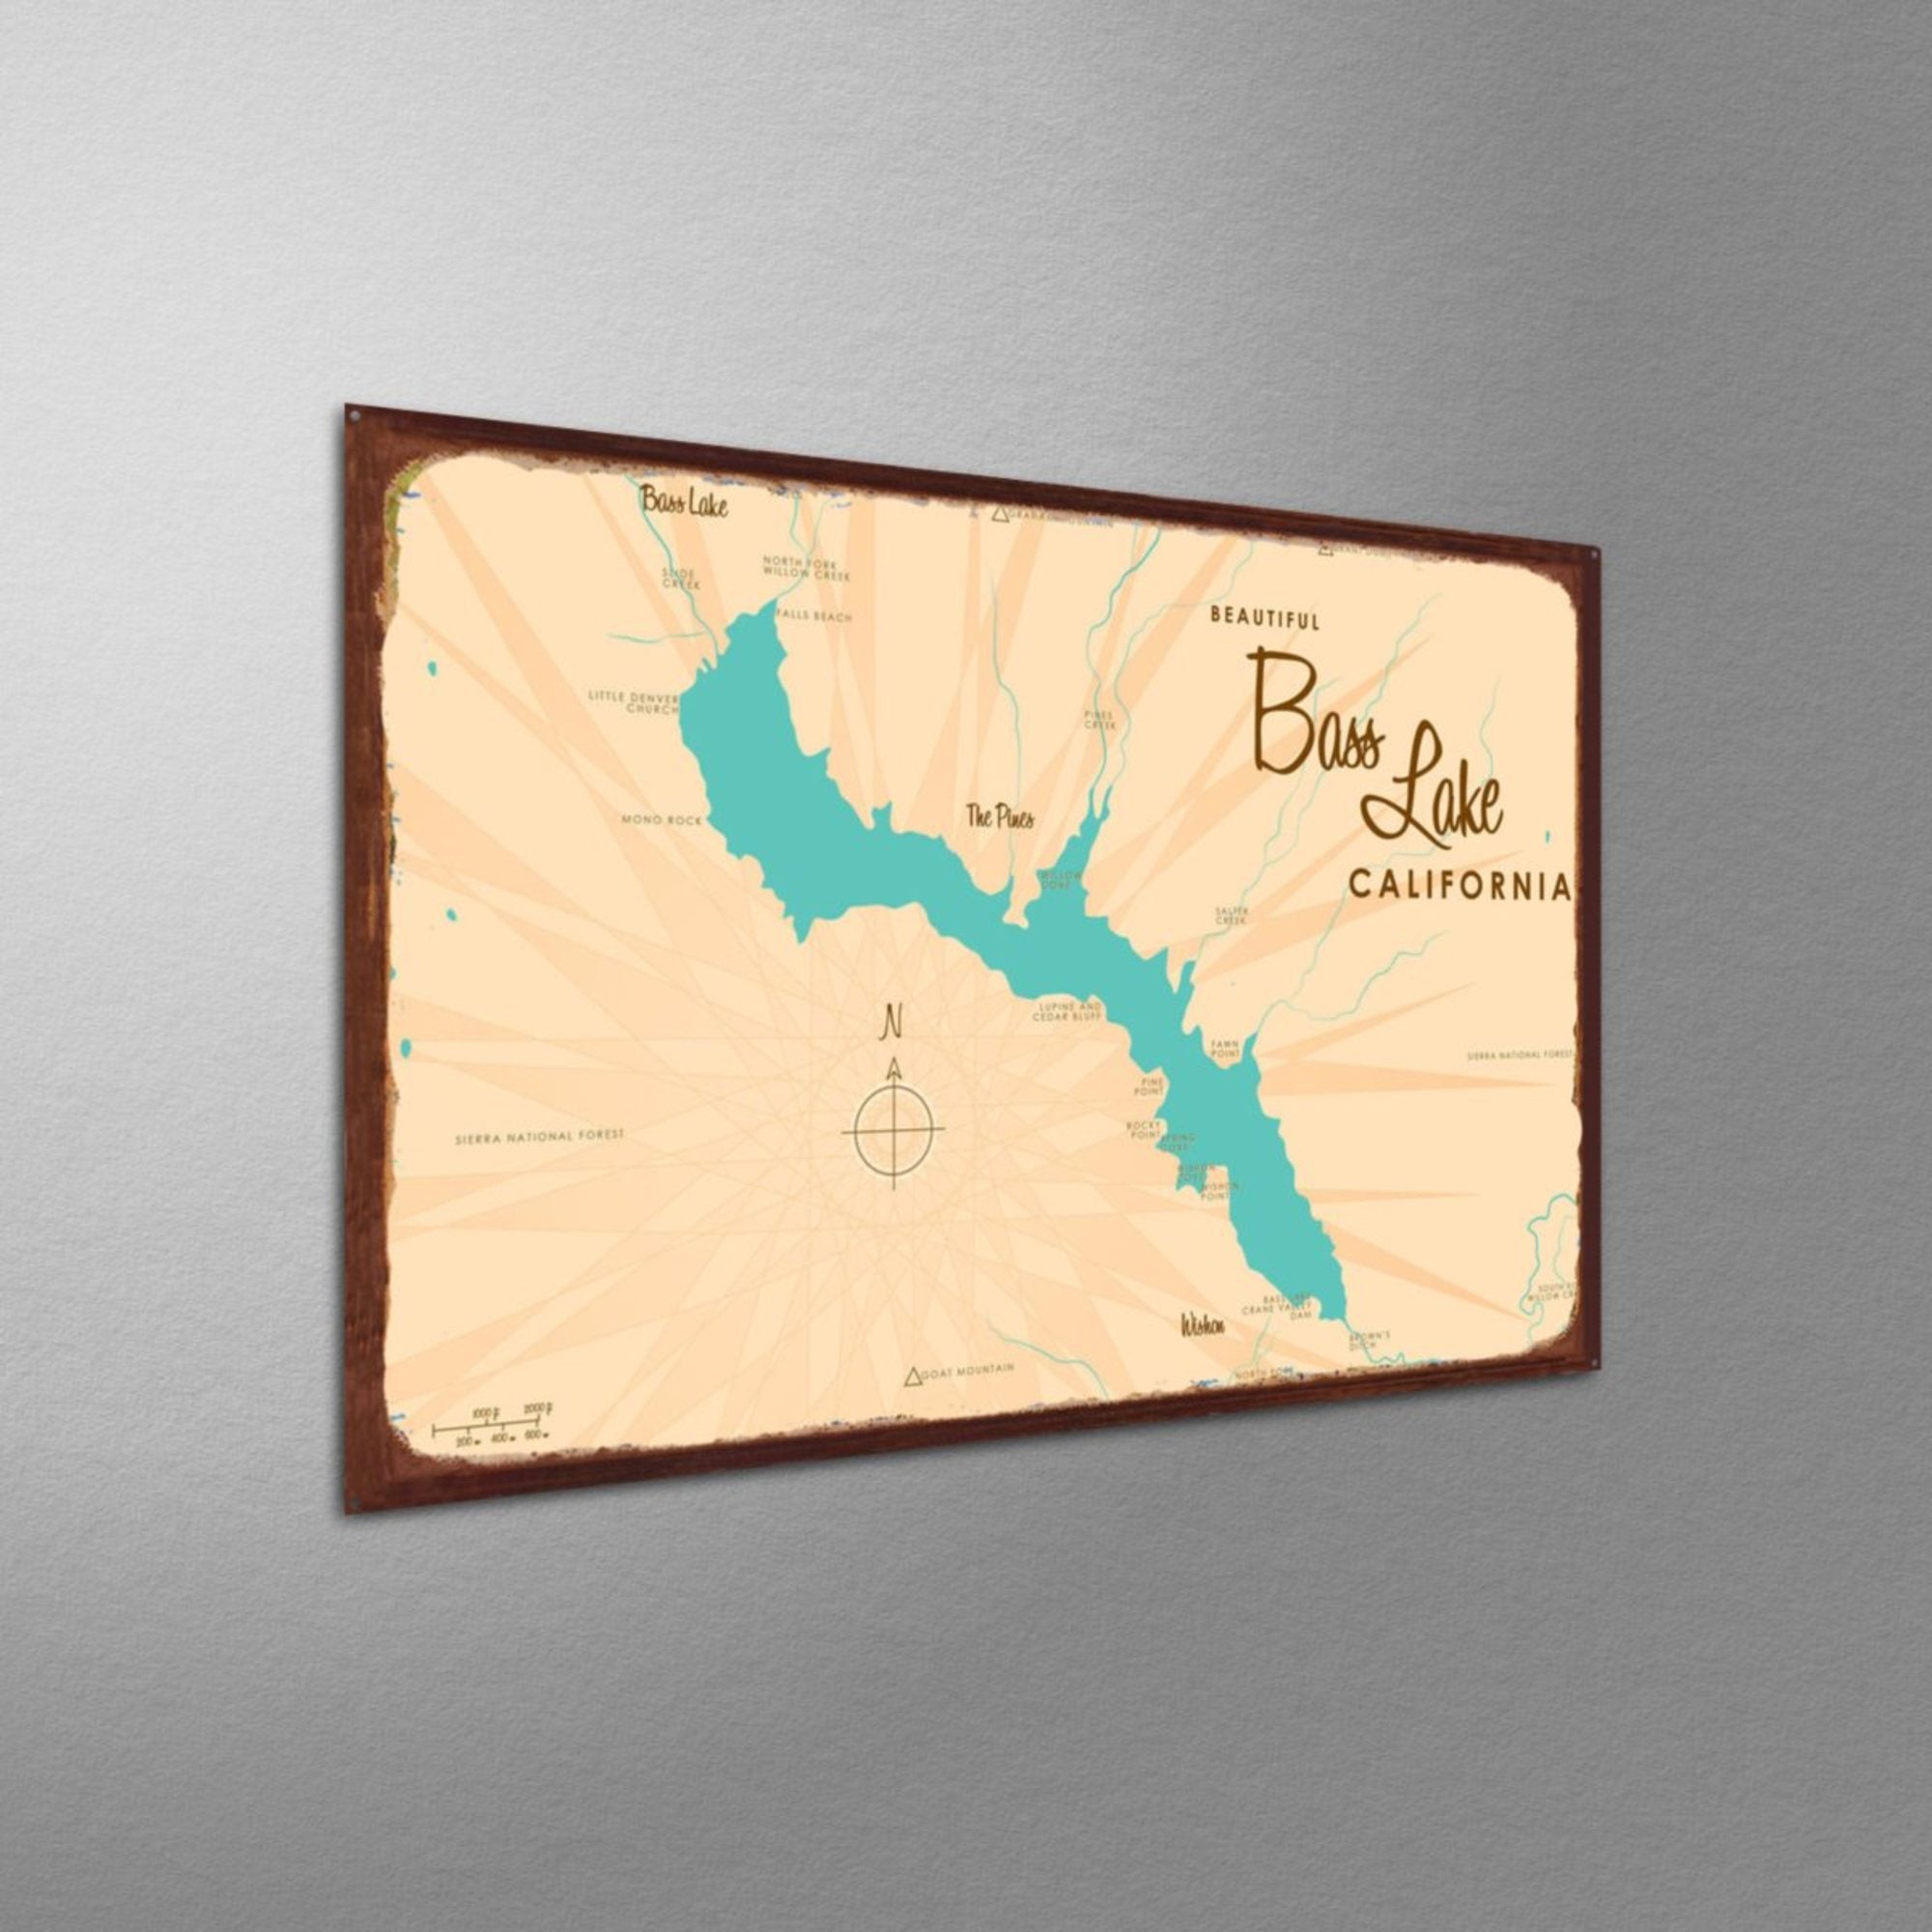 Bass Lake California, Rustic Metal Sign Map Art